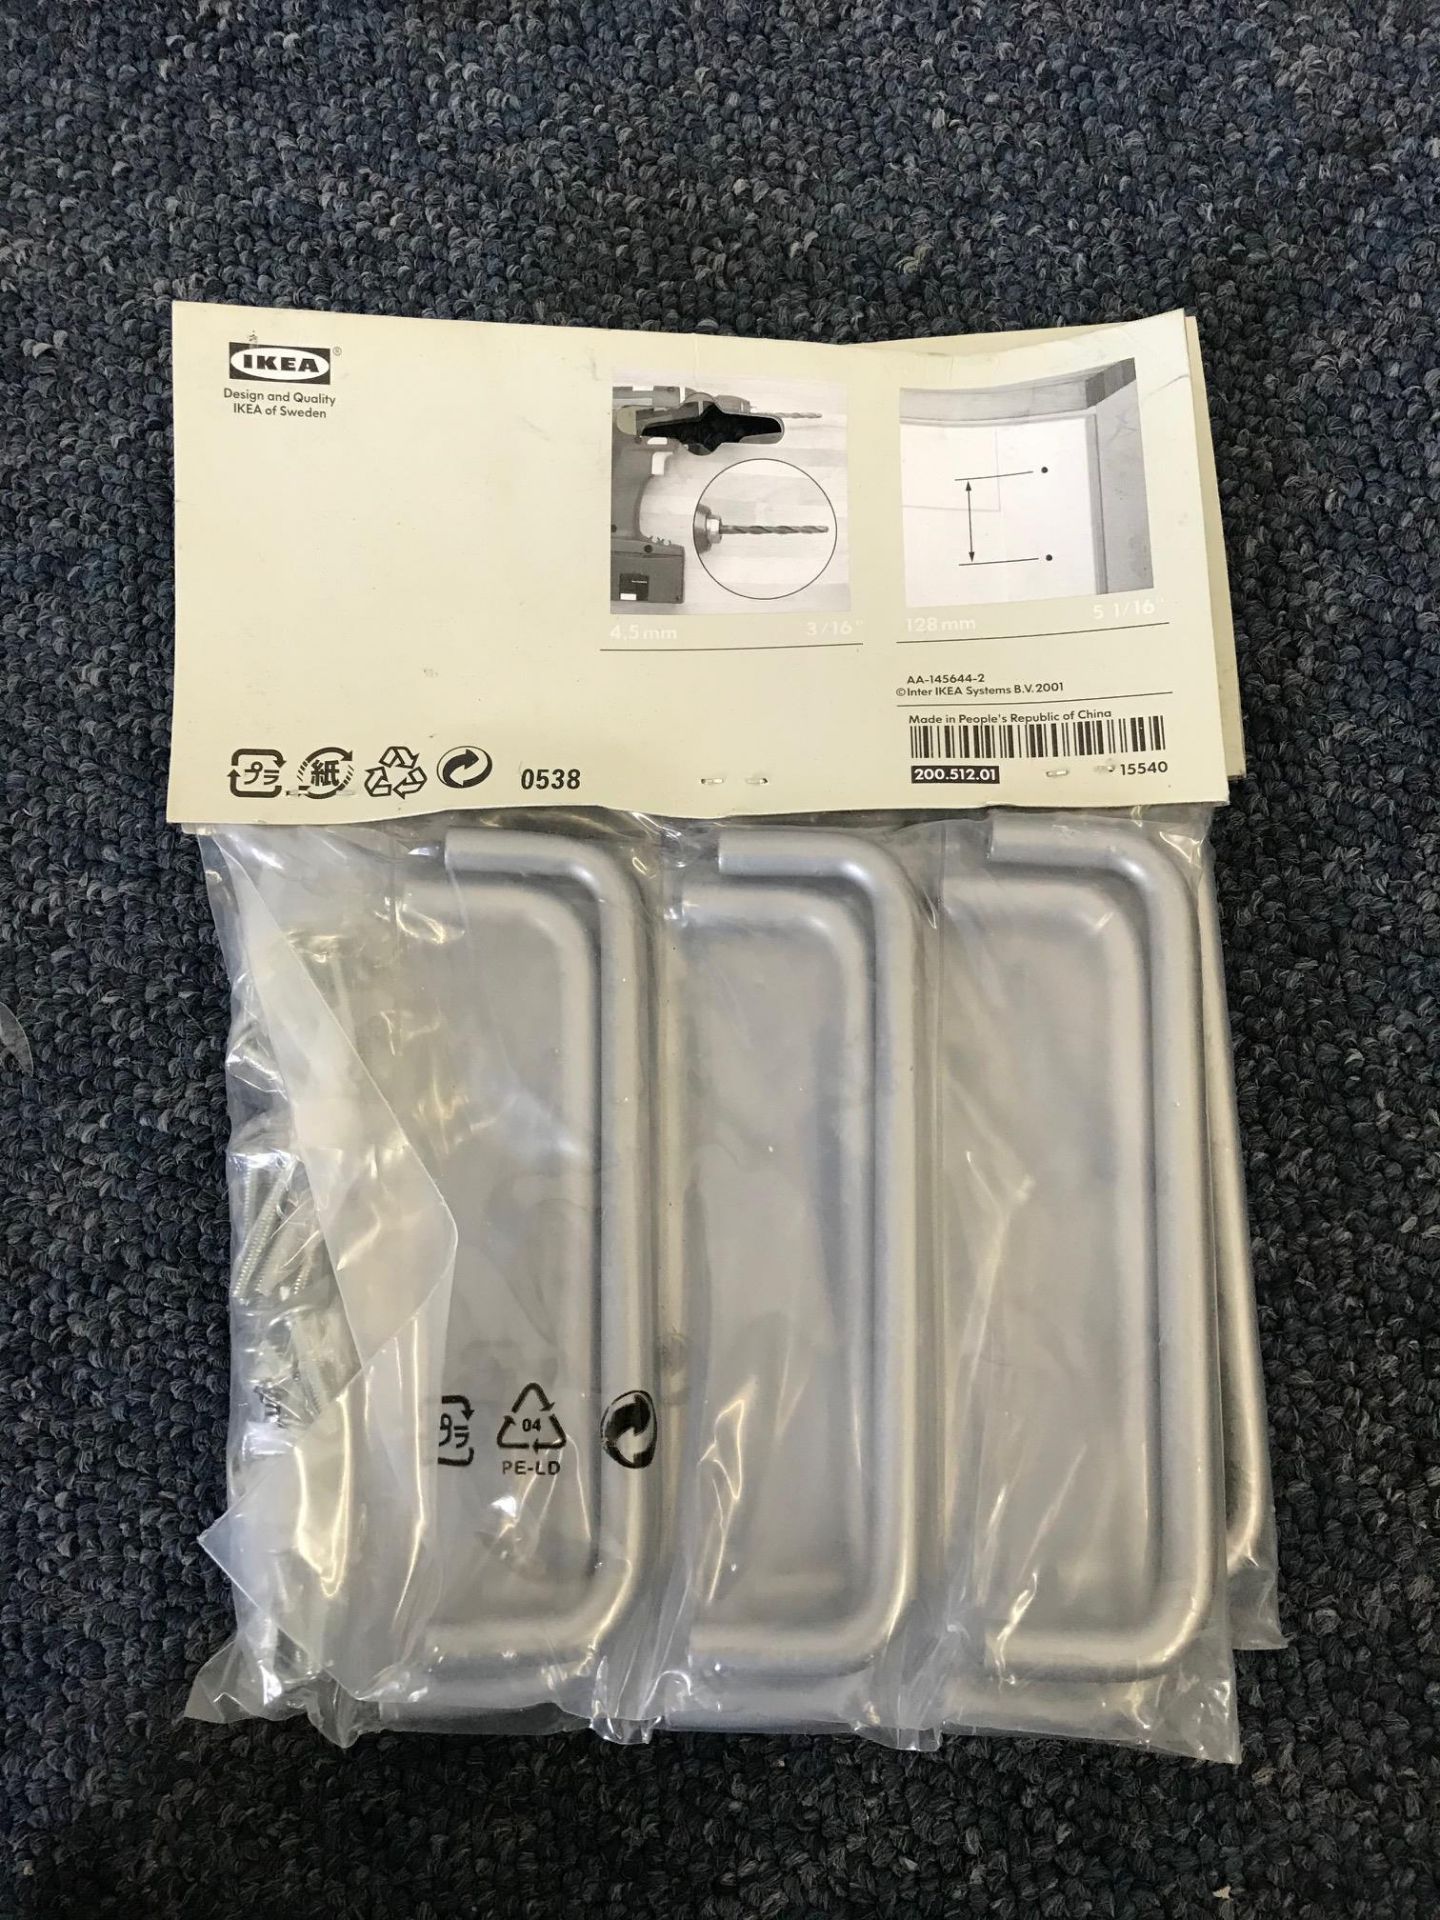 6 Packets Of 6 Ikea Cupboard Door Handles - Image 2 of 3